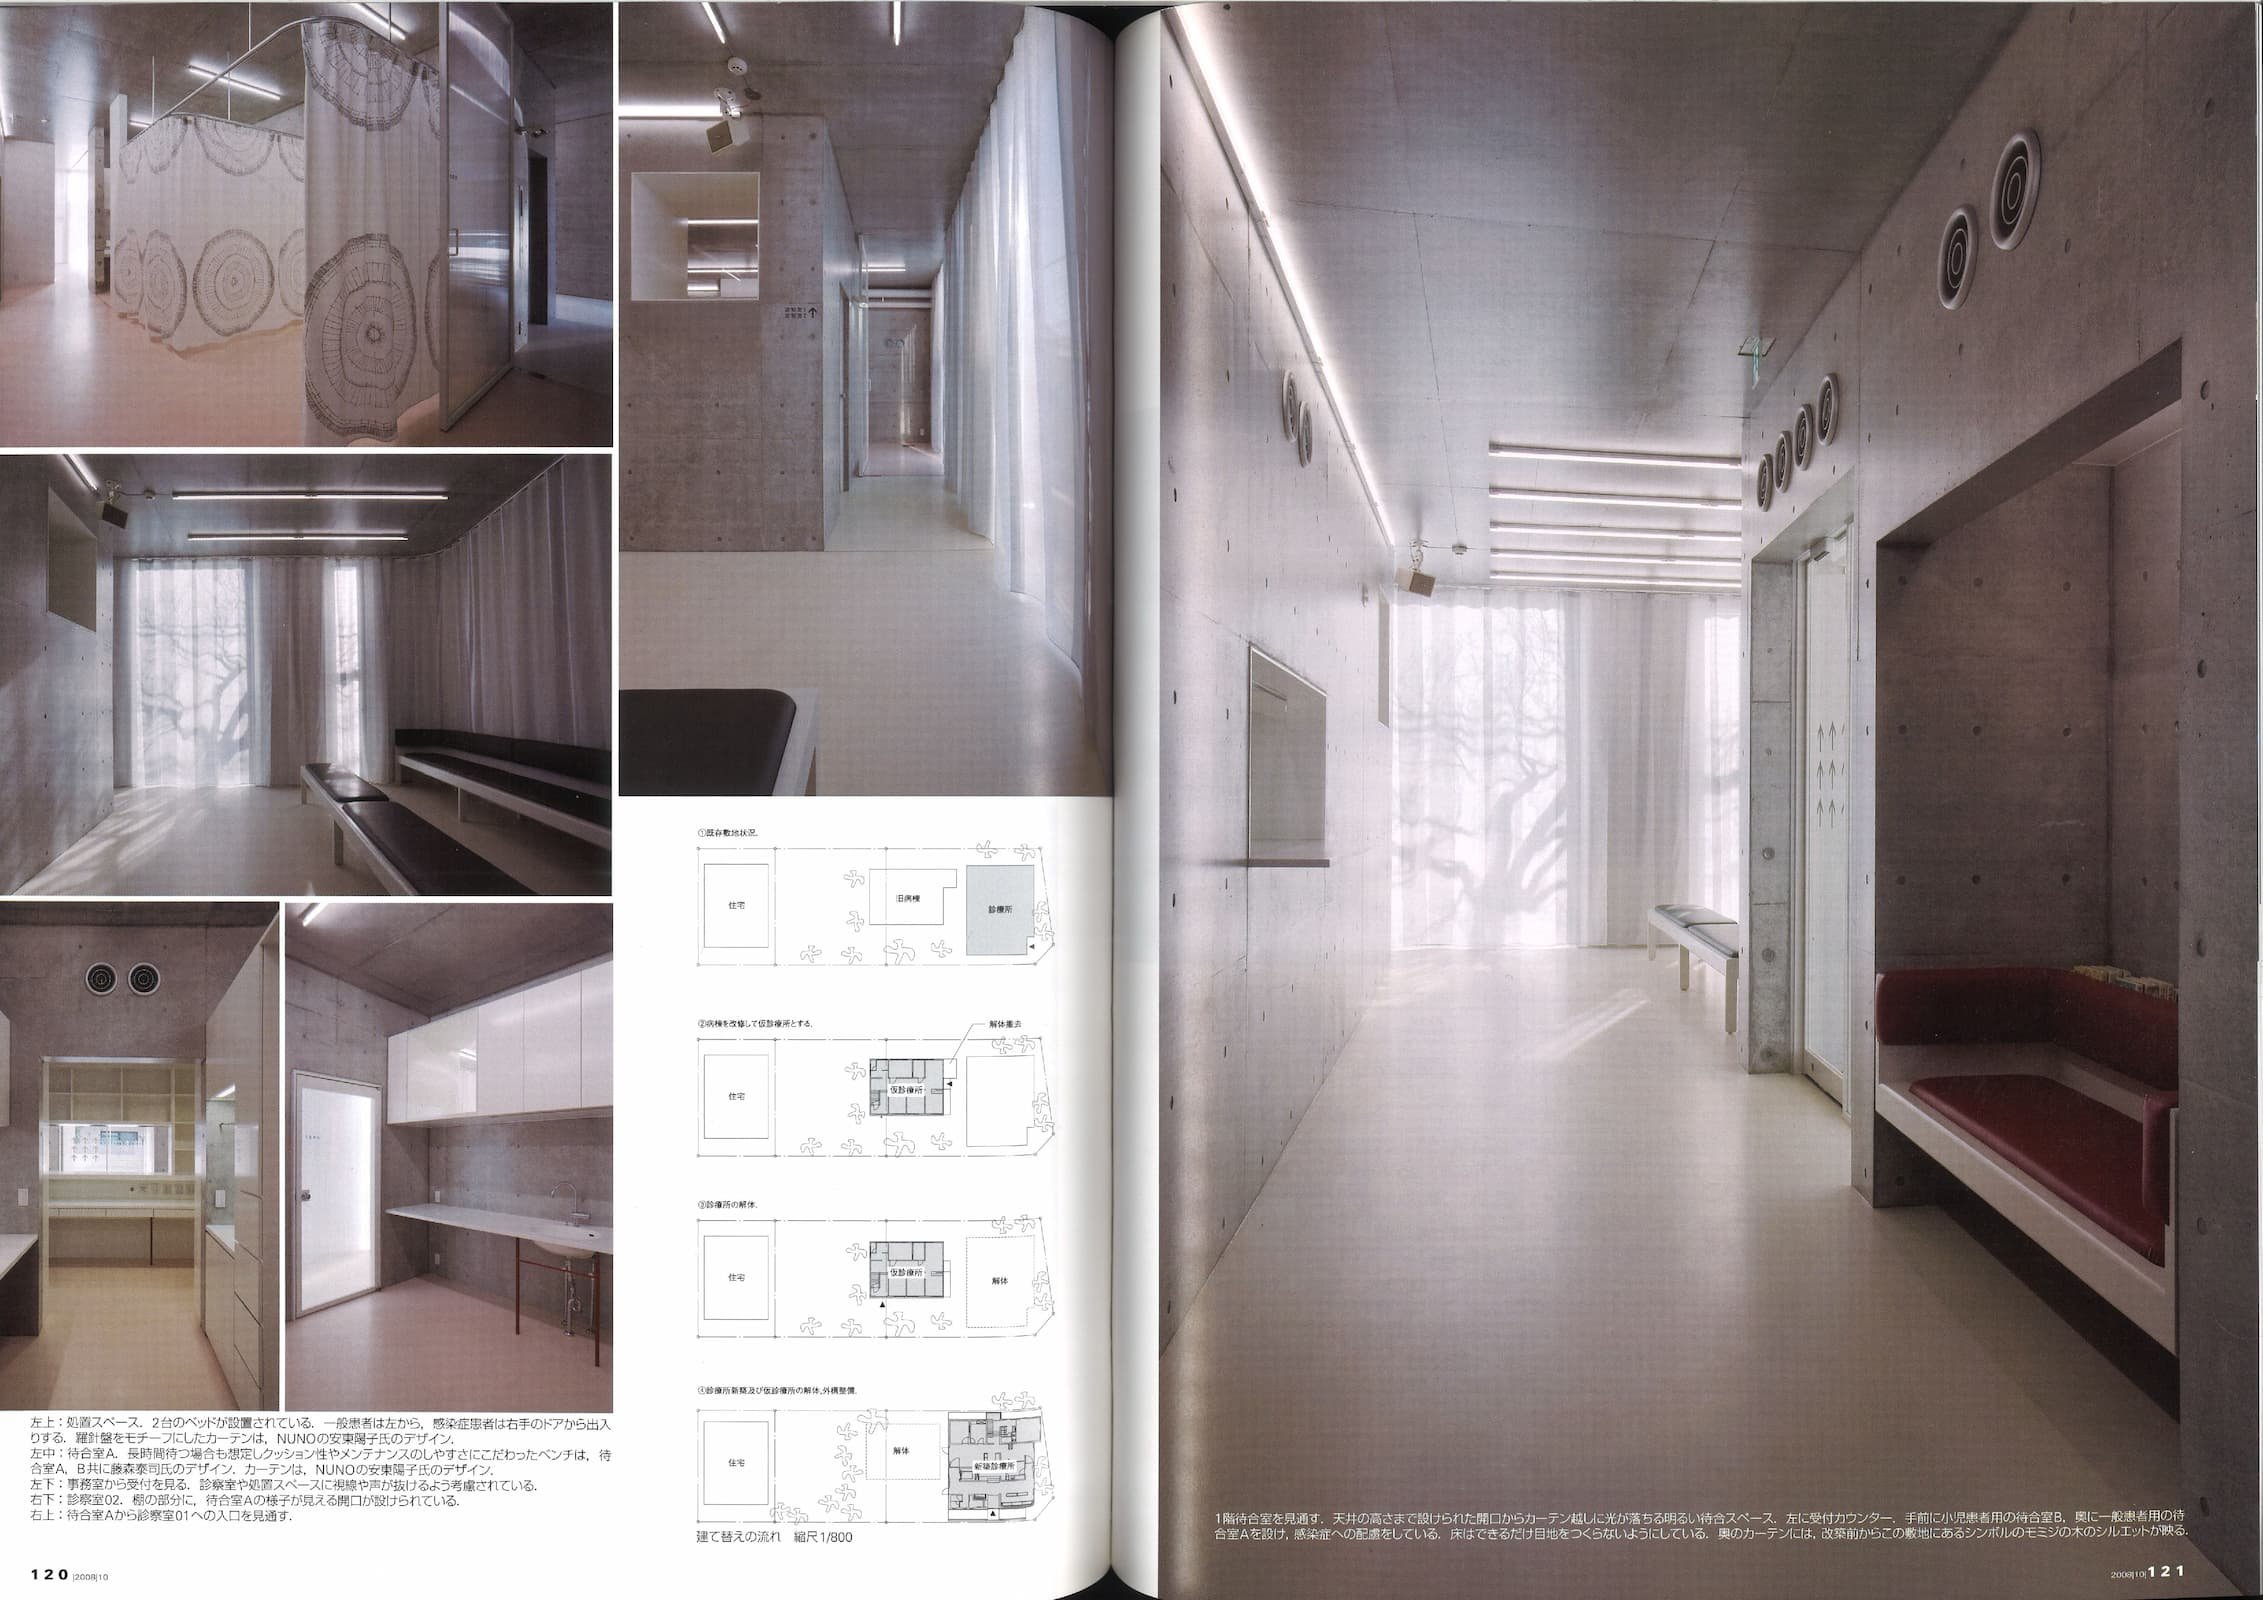 新建築 - New Architecture 83 - O-Clinic_Page_3.jpg